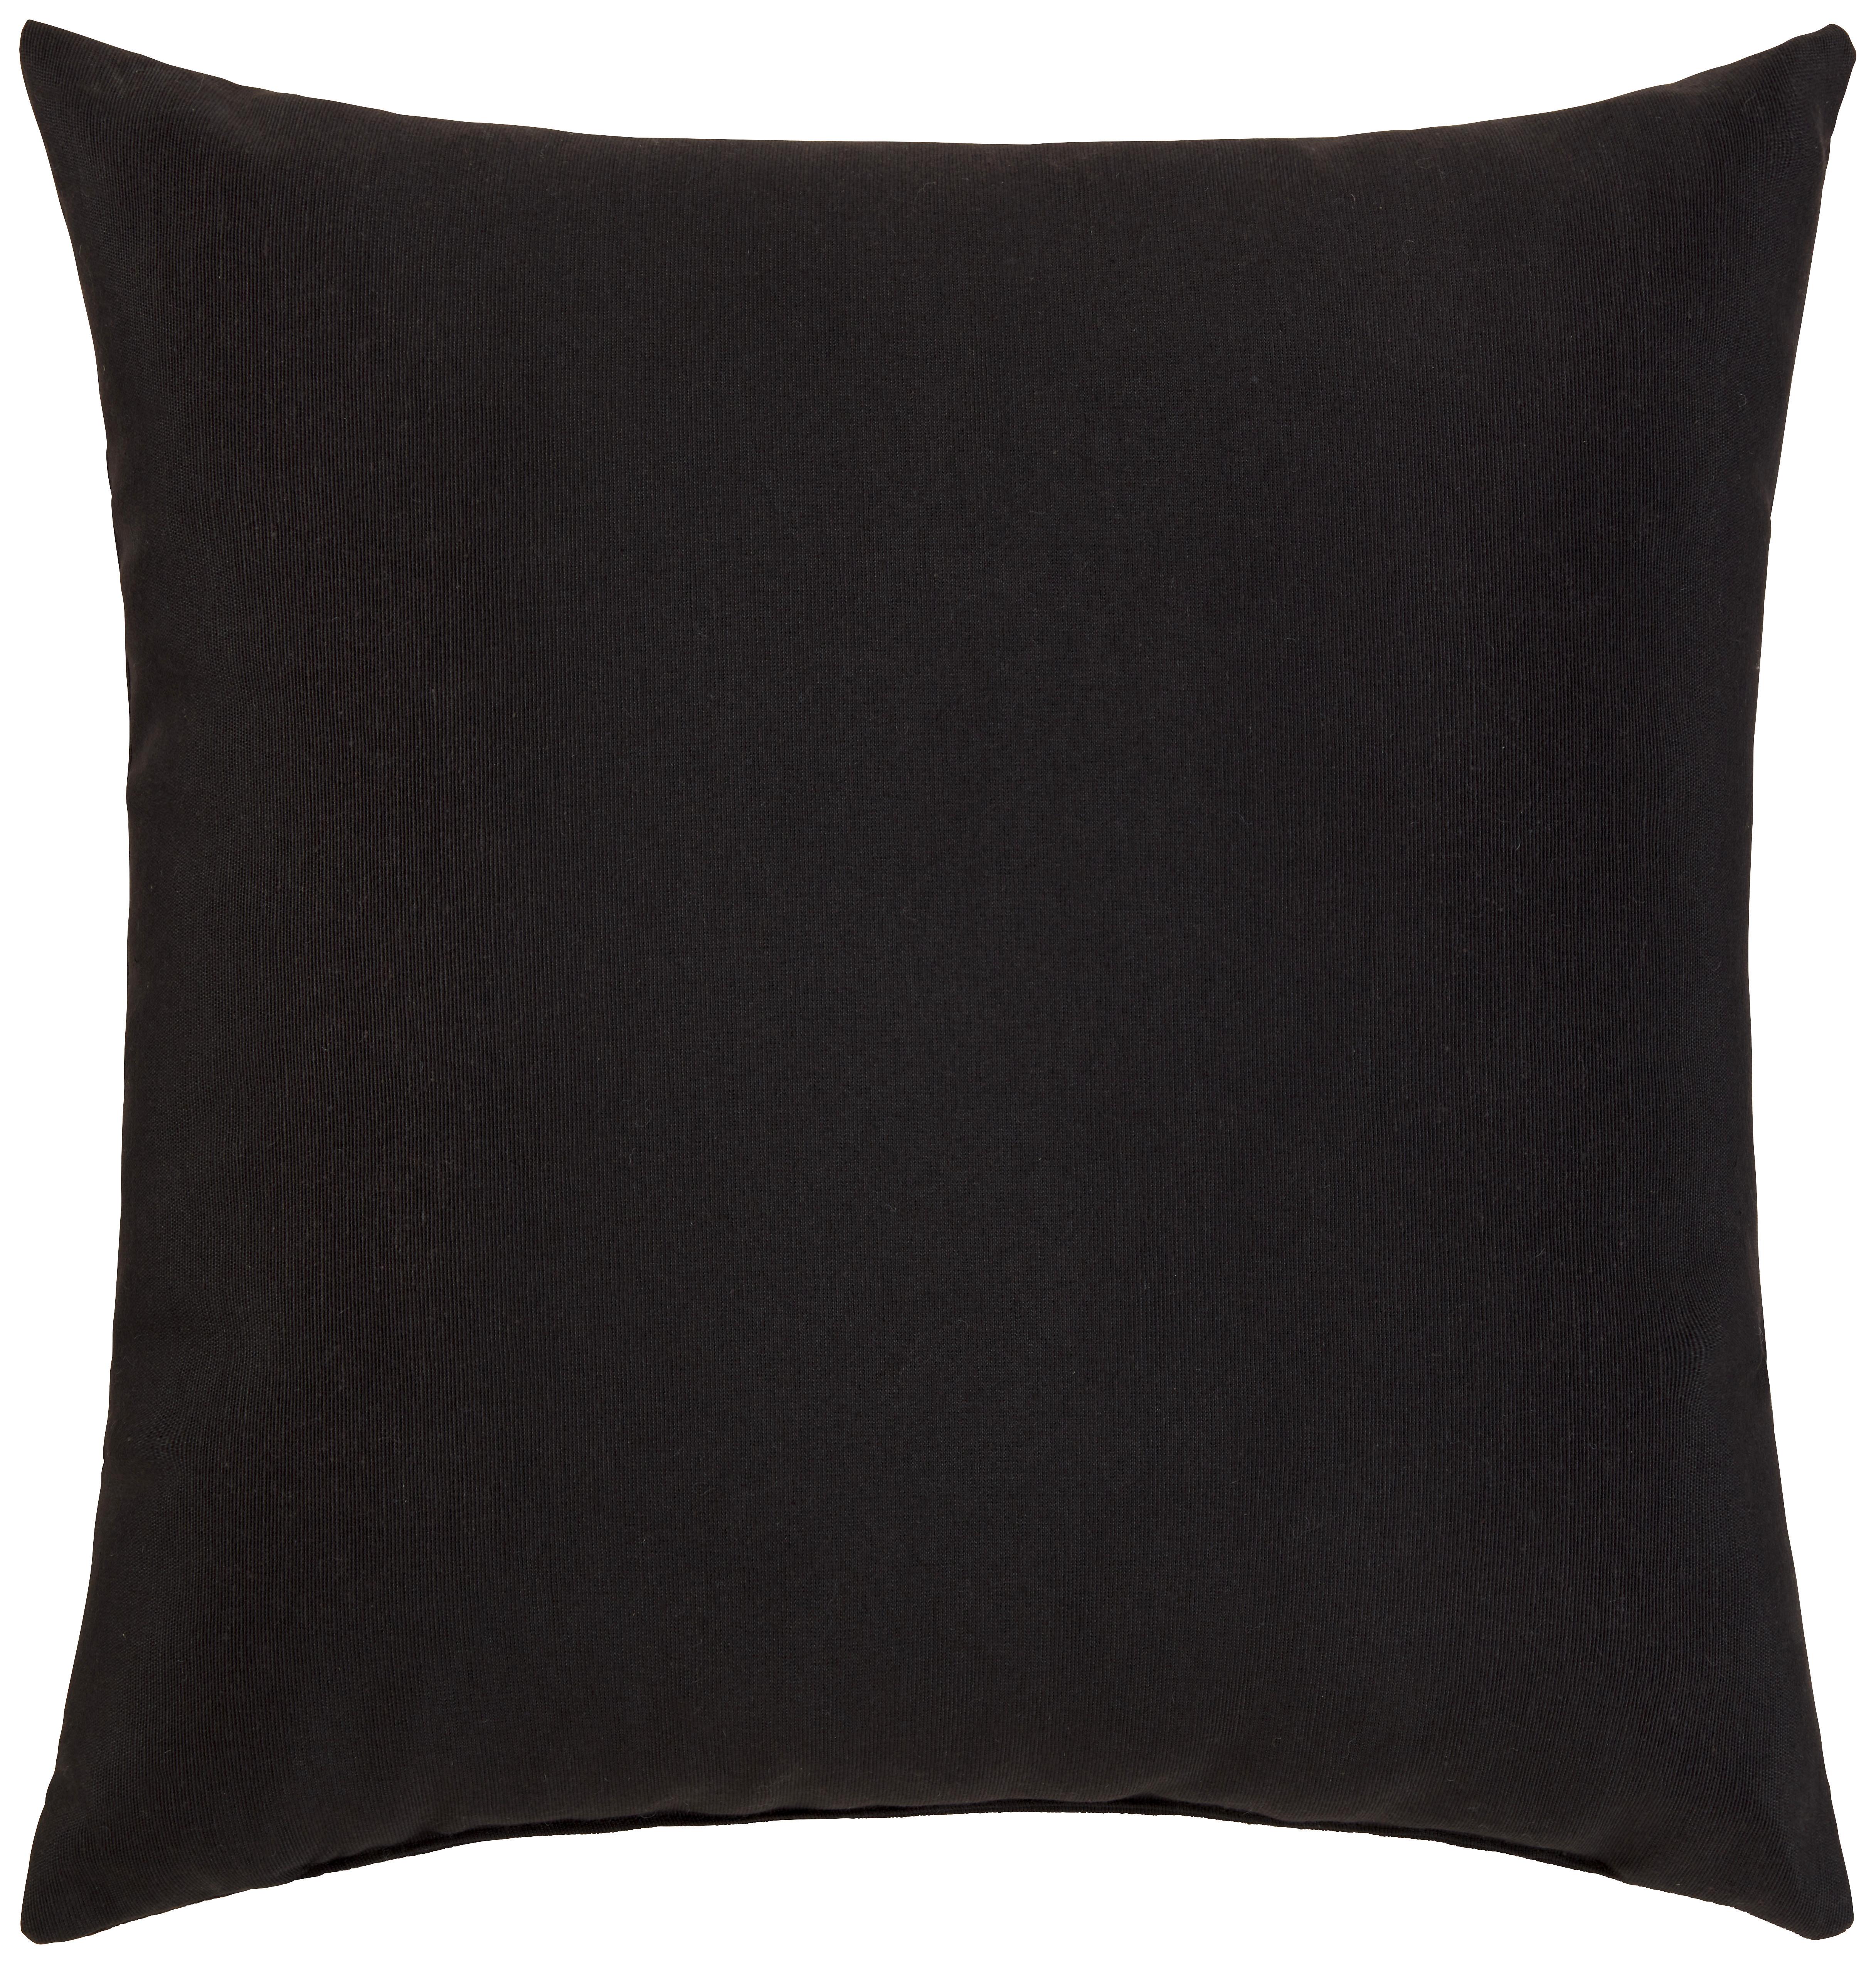 Dekorační Polštář Littlemex, 38/38cm, Černá - černá, Konvenční, textil (38/38cm) - Modern Living